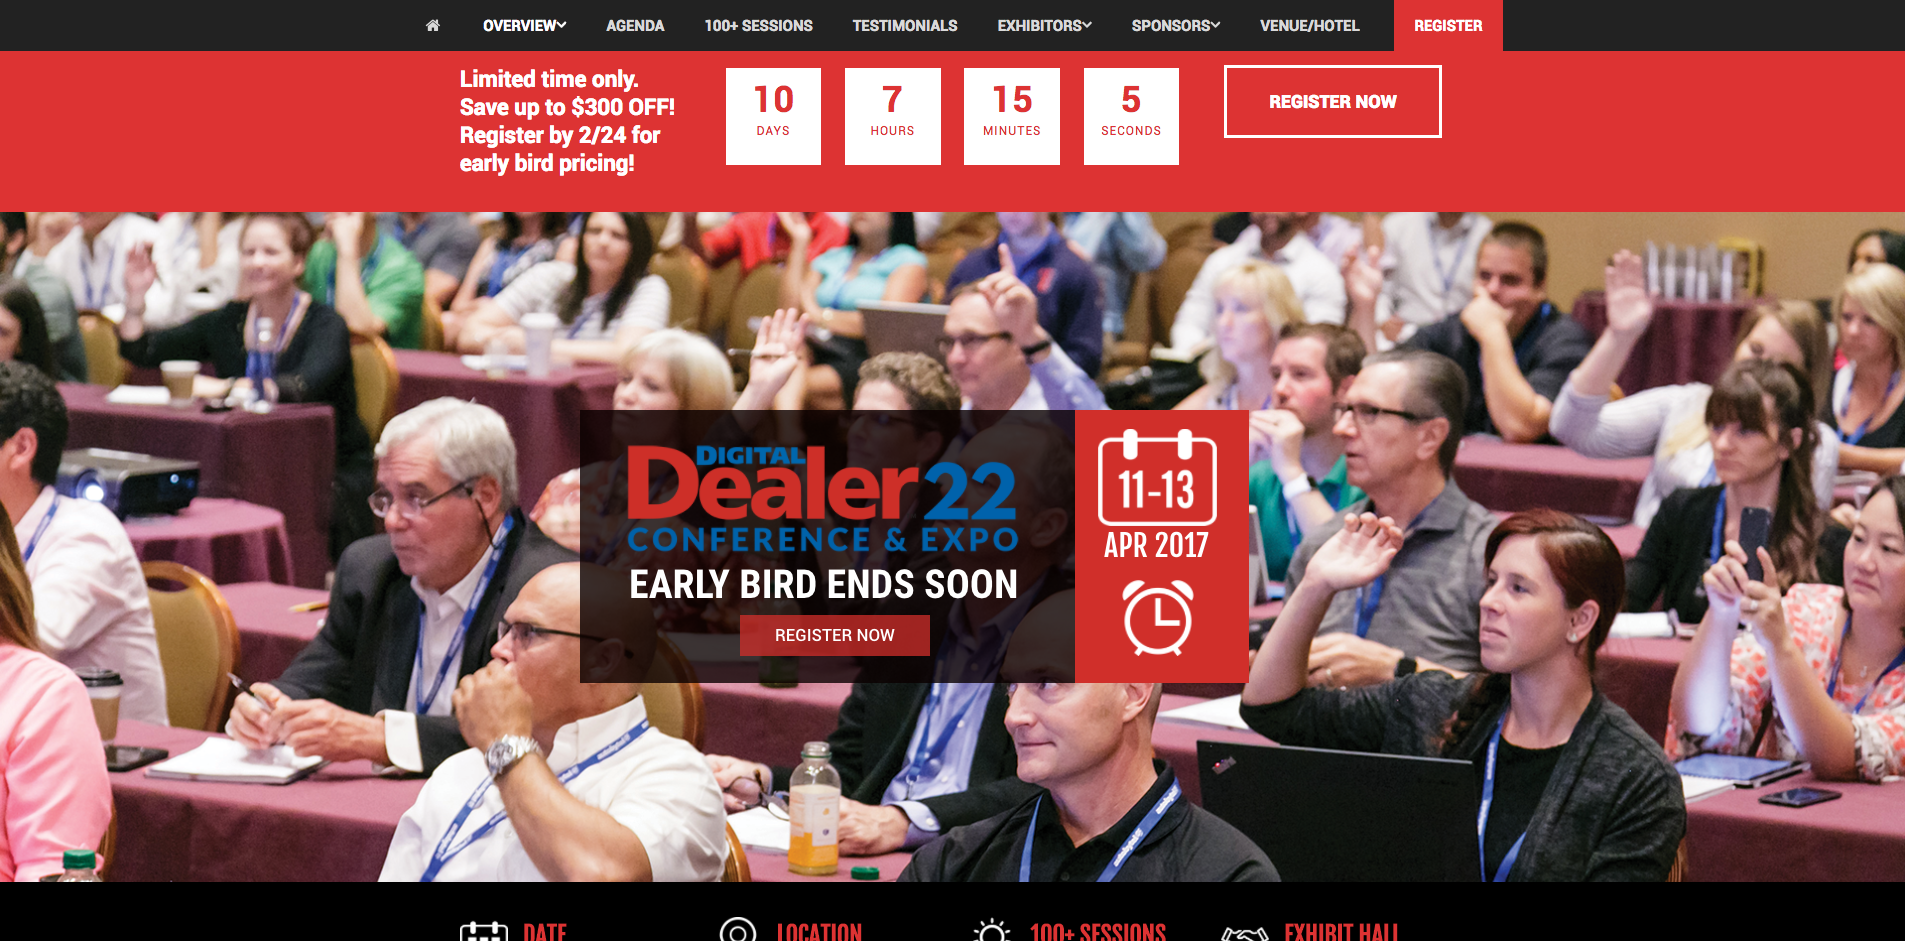 Digital Dealer Conference